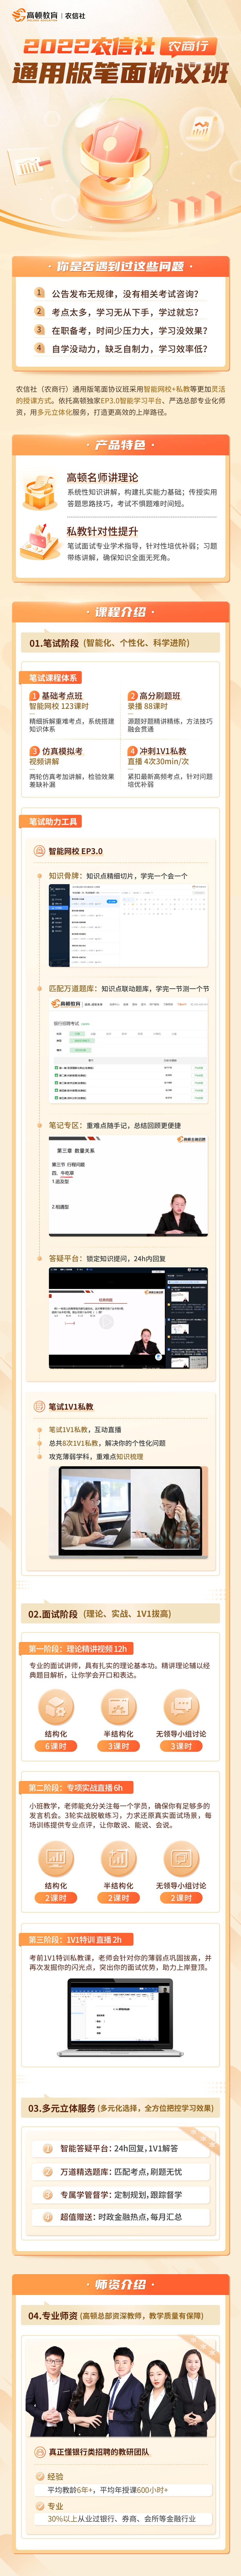 https://simg01.gaodunwangxiao.com/uploadfiles/product-center/202208/08/d3857_20220808114147.jpg